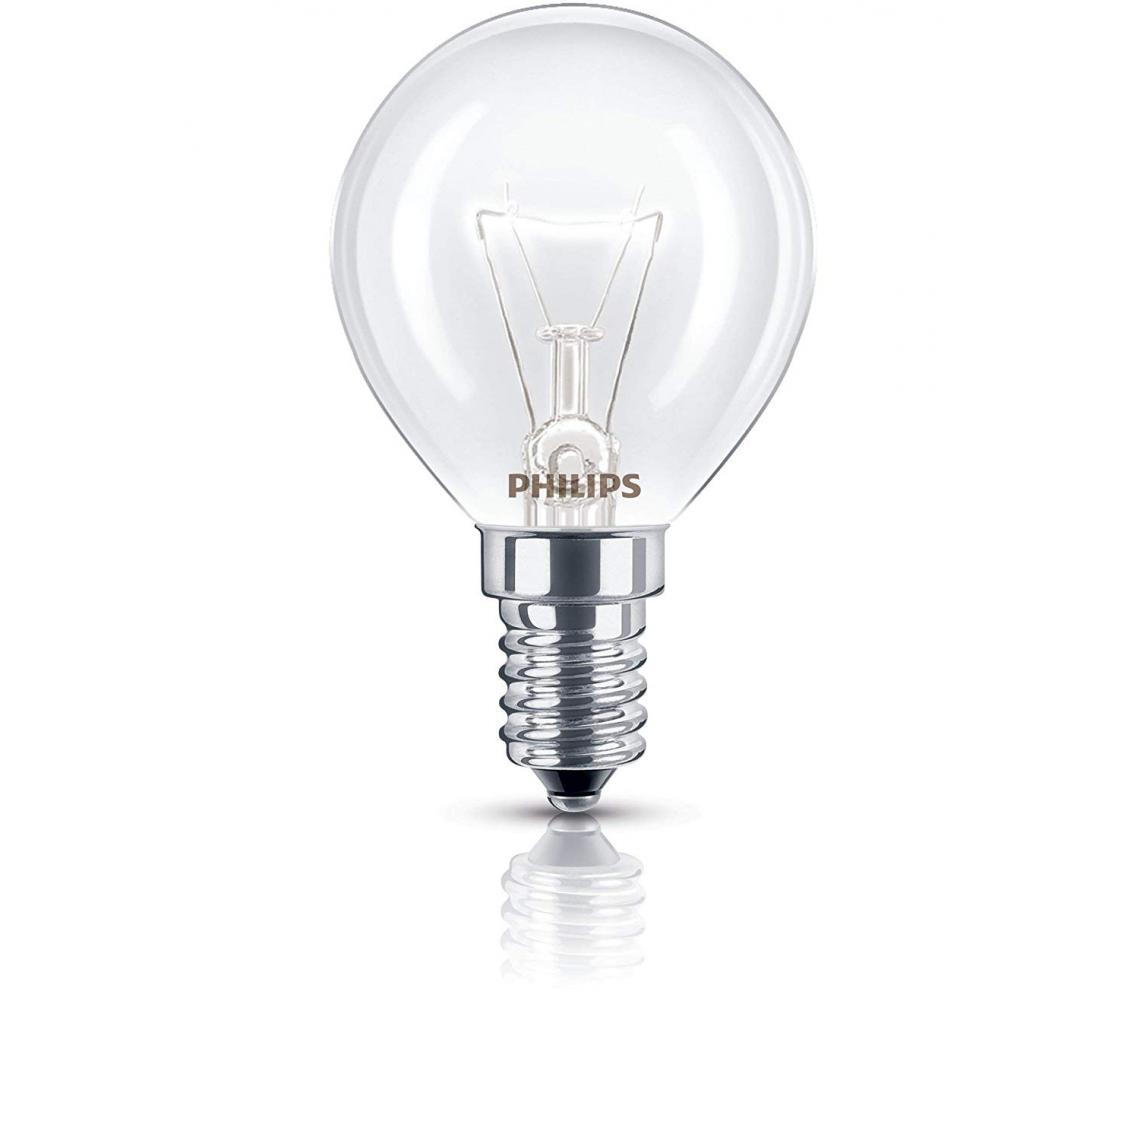 Philips - Philips Ampoule LED Sphérique Culot E14, 4 W Équivalent 40 W, Blanc Chaud 2700K, Dépolie - Ampoules LED